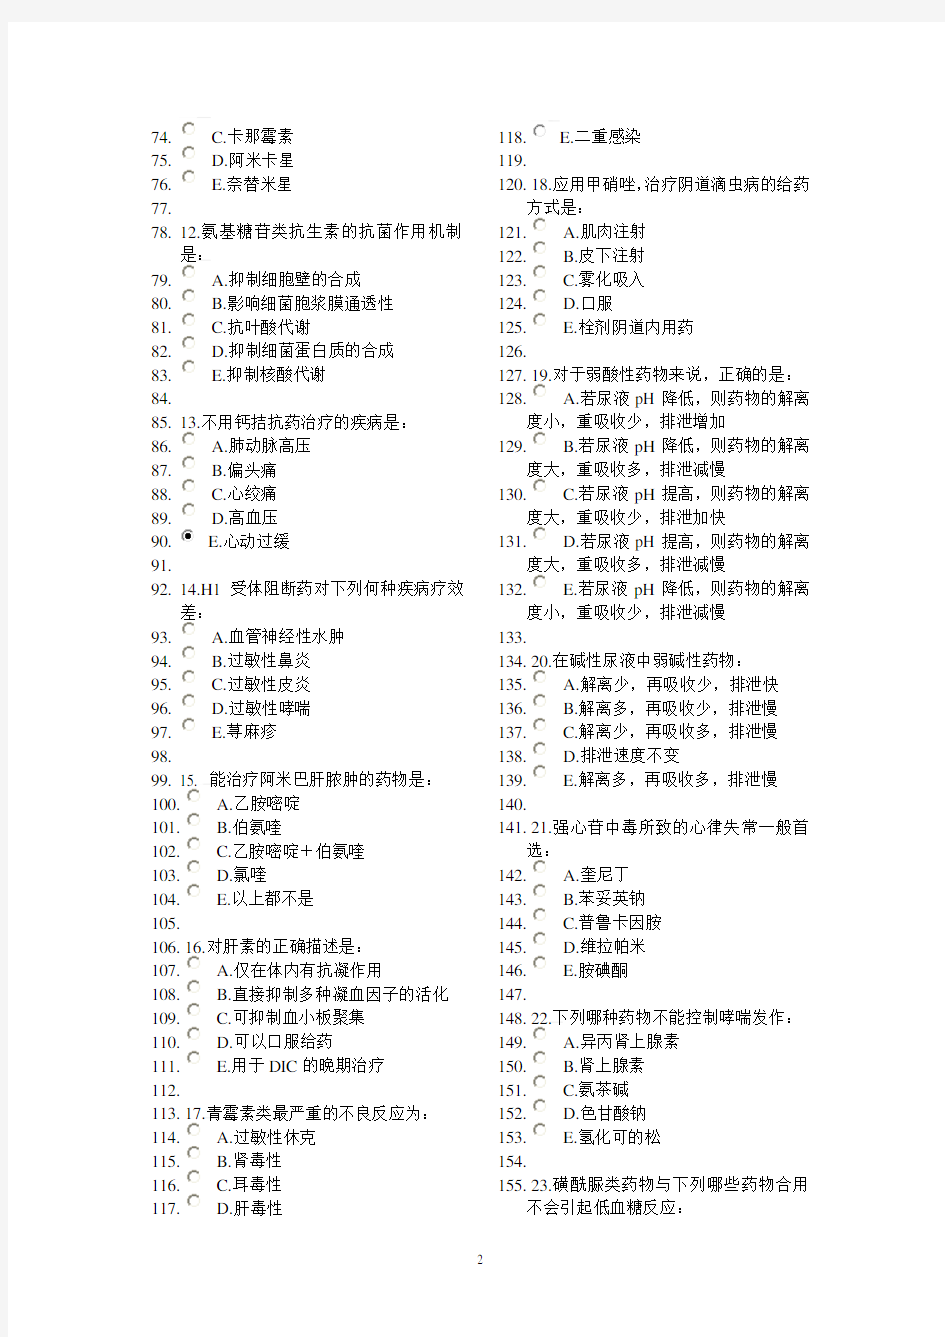 中国医科大学网络教育药理学试题及答案(2020年整理).pdf